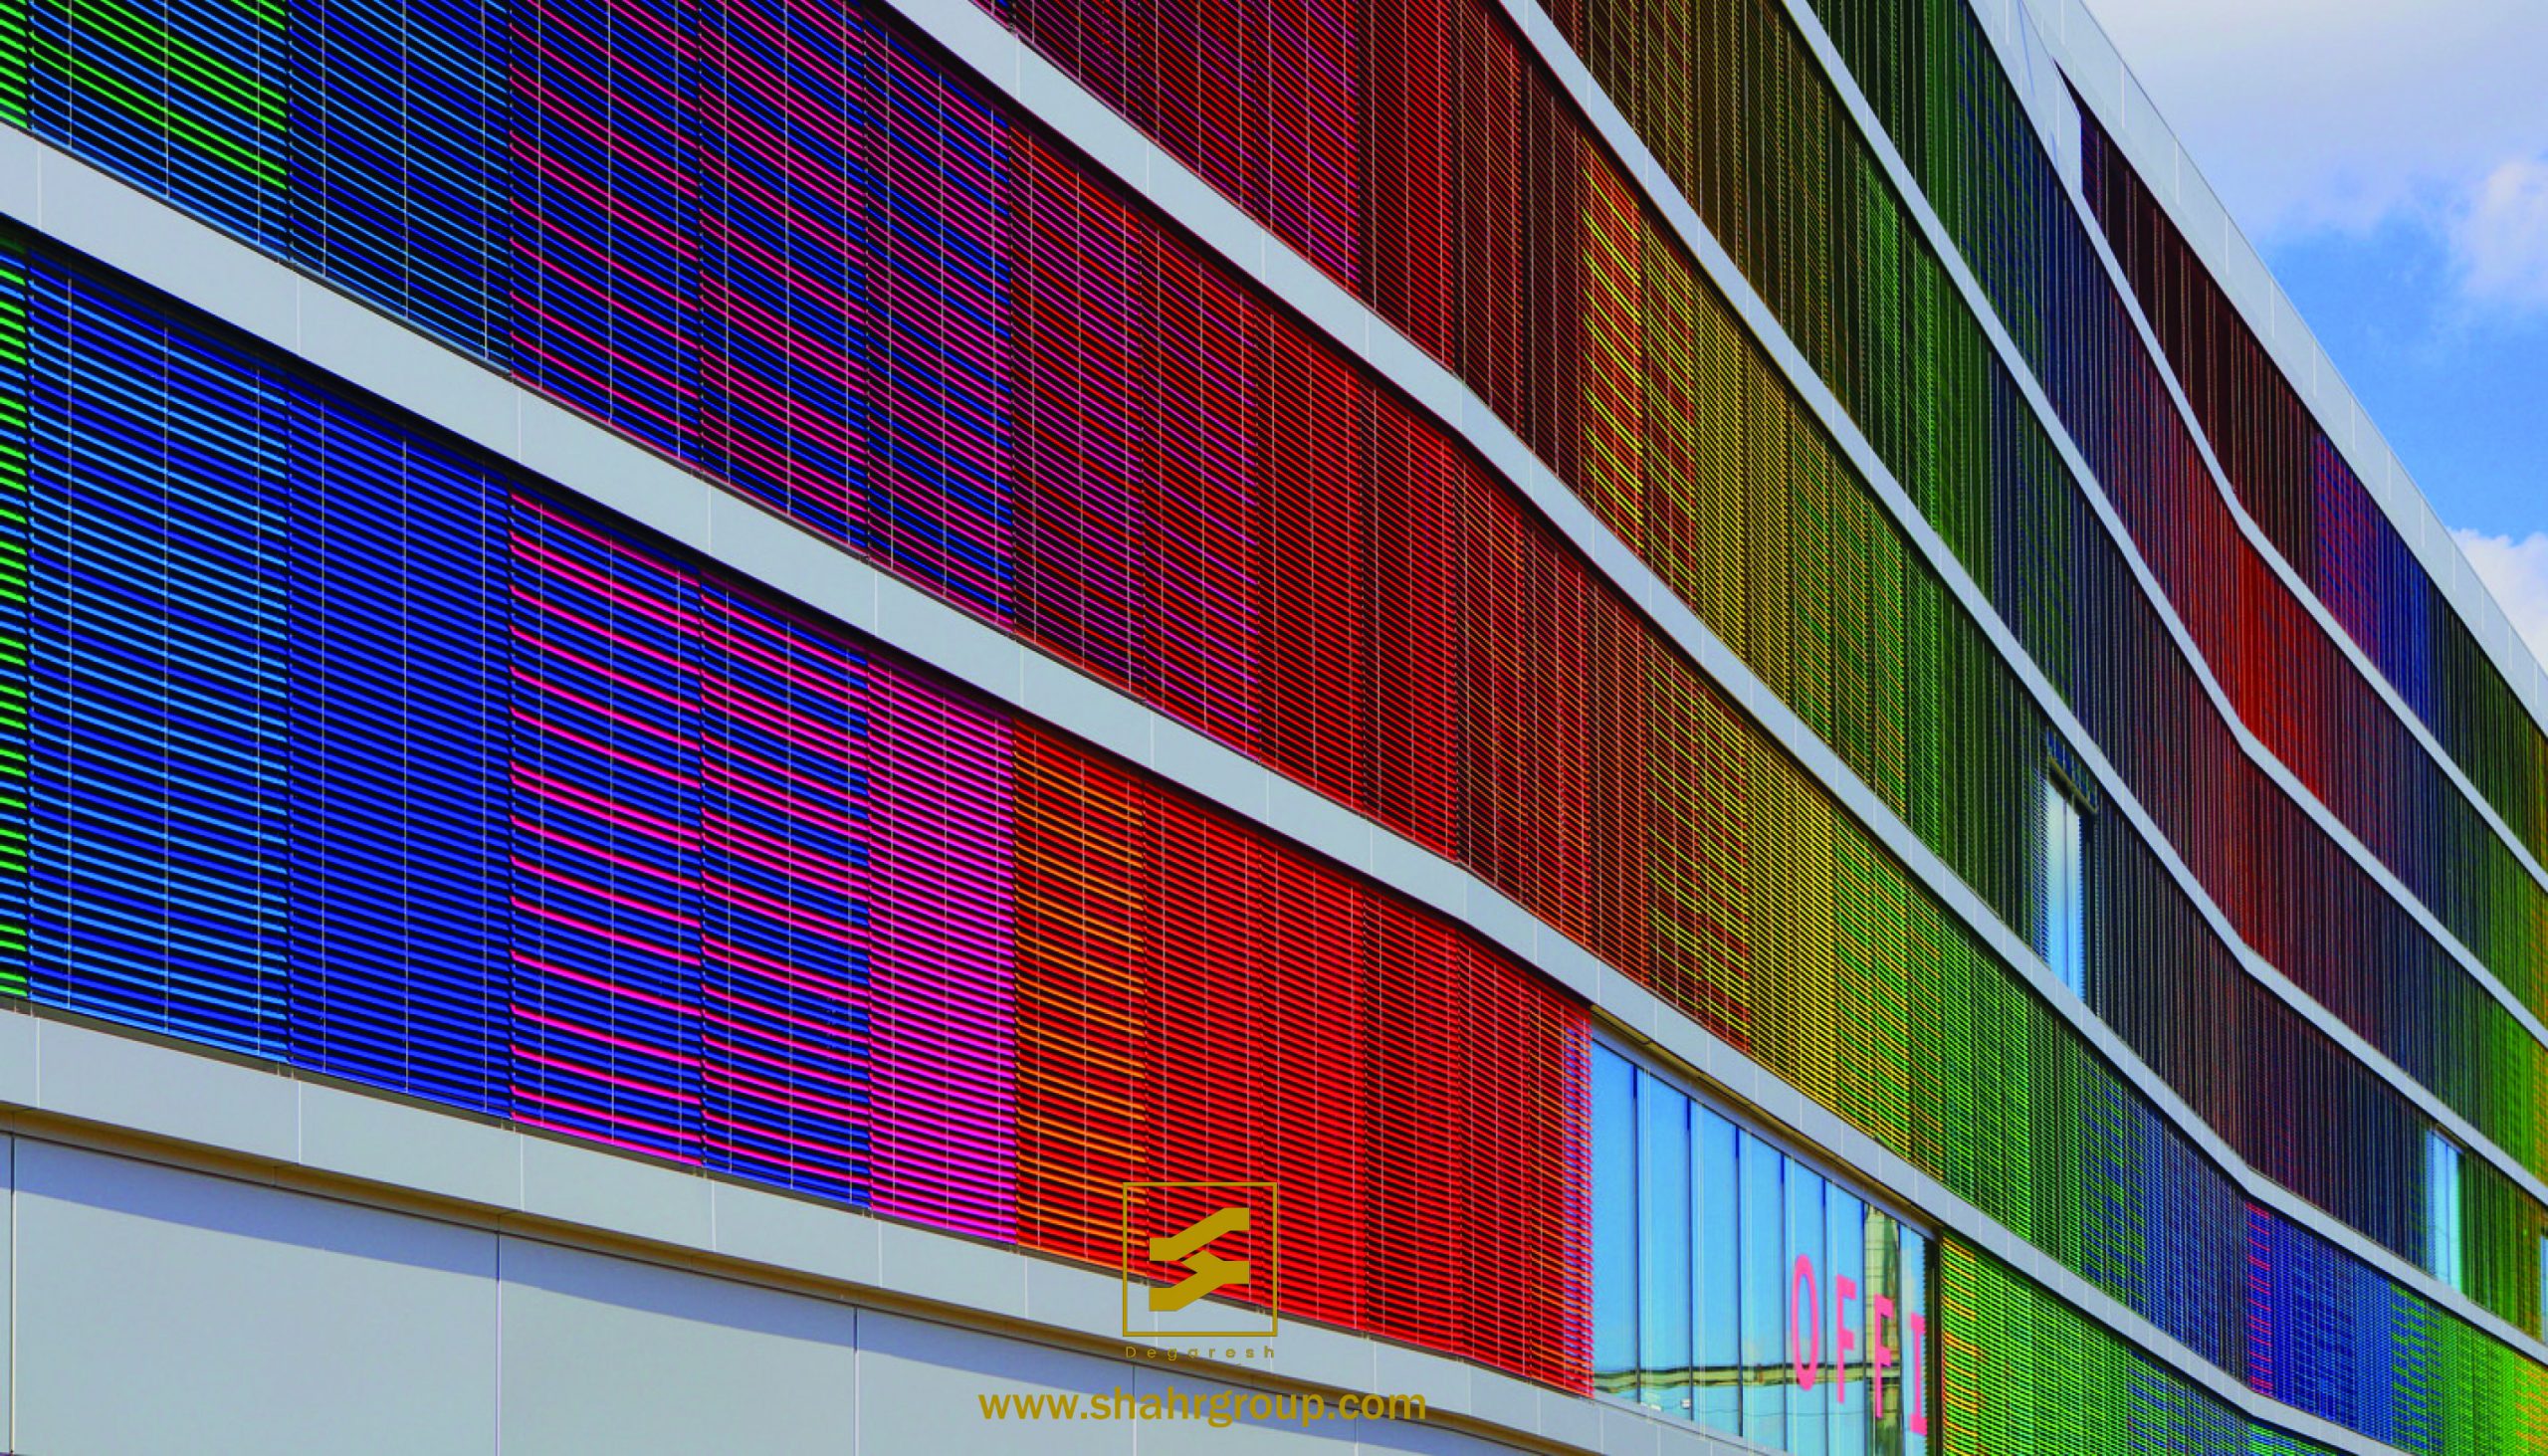 اهمیت رنگ - رنگ در معماری - روانشناسی رنگ - رنگ در ساختمان